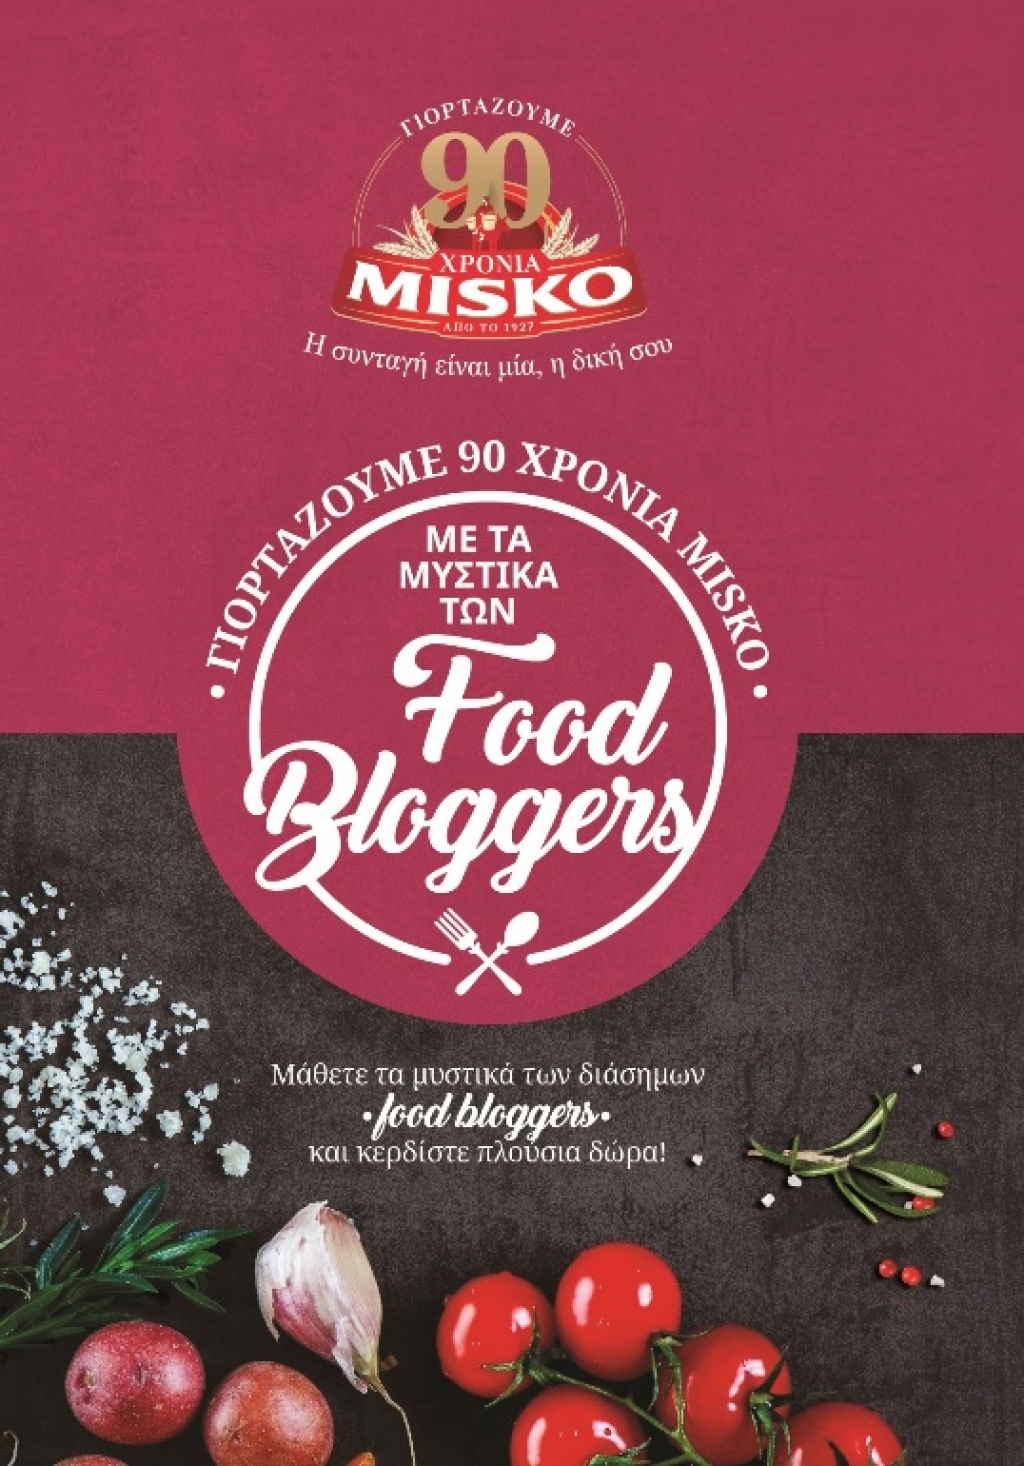 Η MISKO γιορτάζει 90 χρόνια με μυστικά μαγειρικής  και ένα ταξίδι στον Άγιο Δομίνικο!